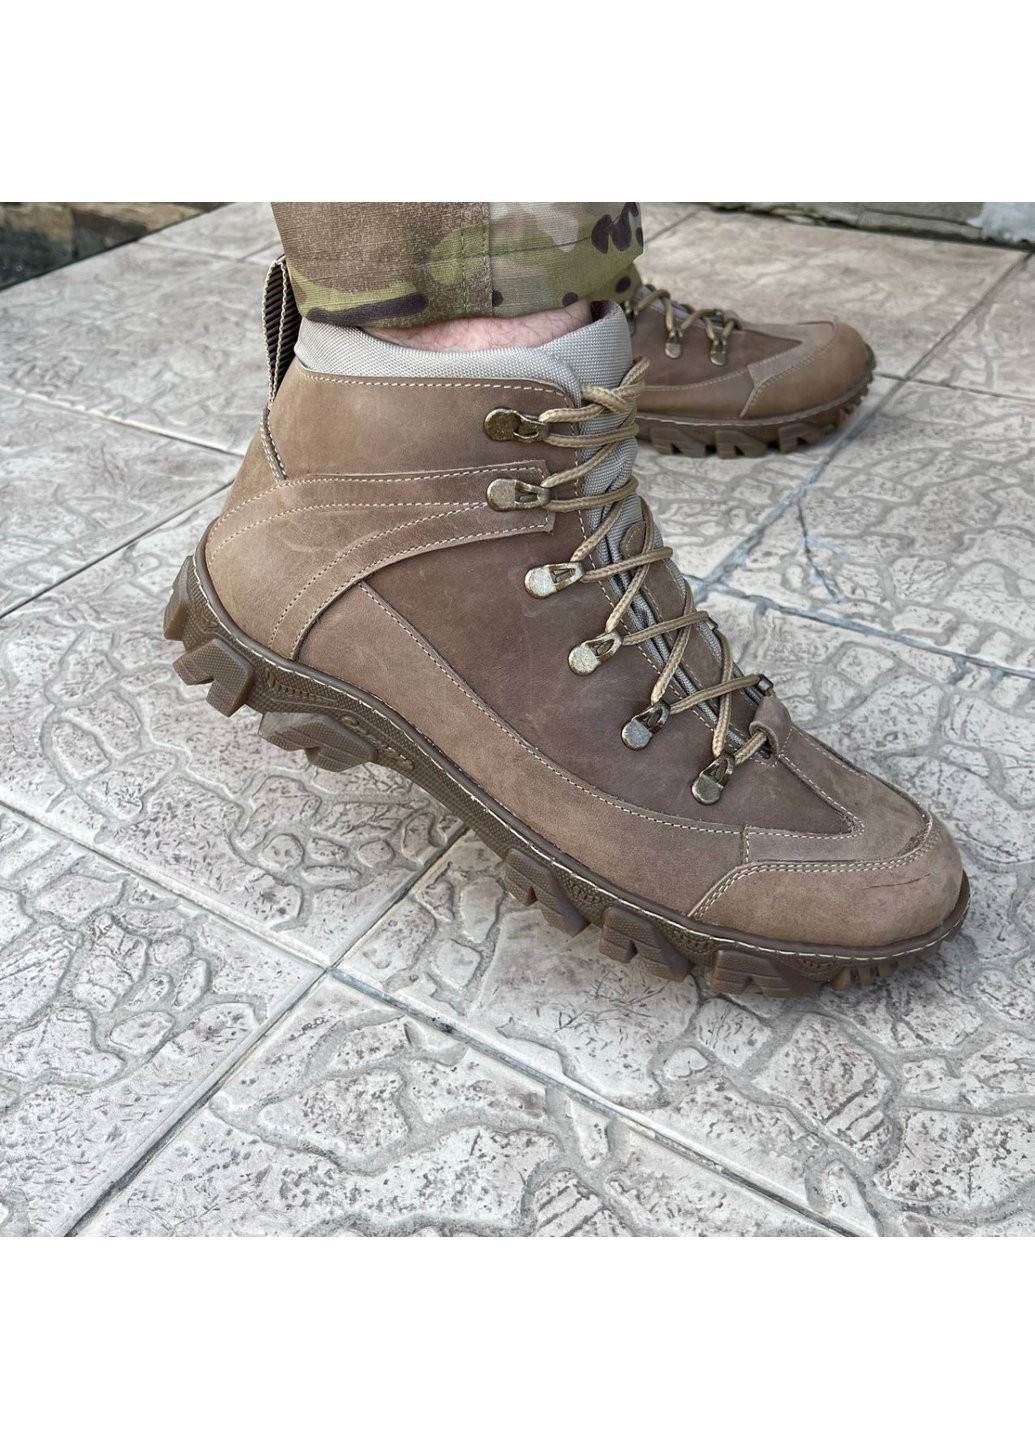 Коричневые осенние ботинки военные тактические всу (зсу) 7523 44 р 29 см коричневые Power